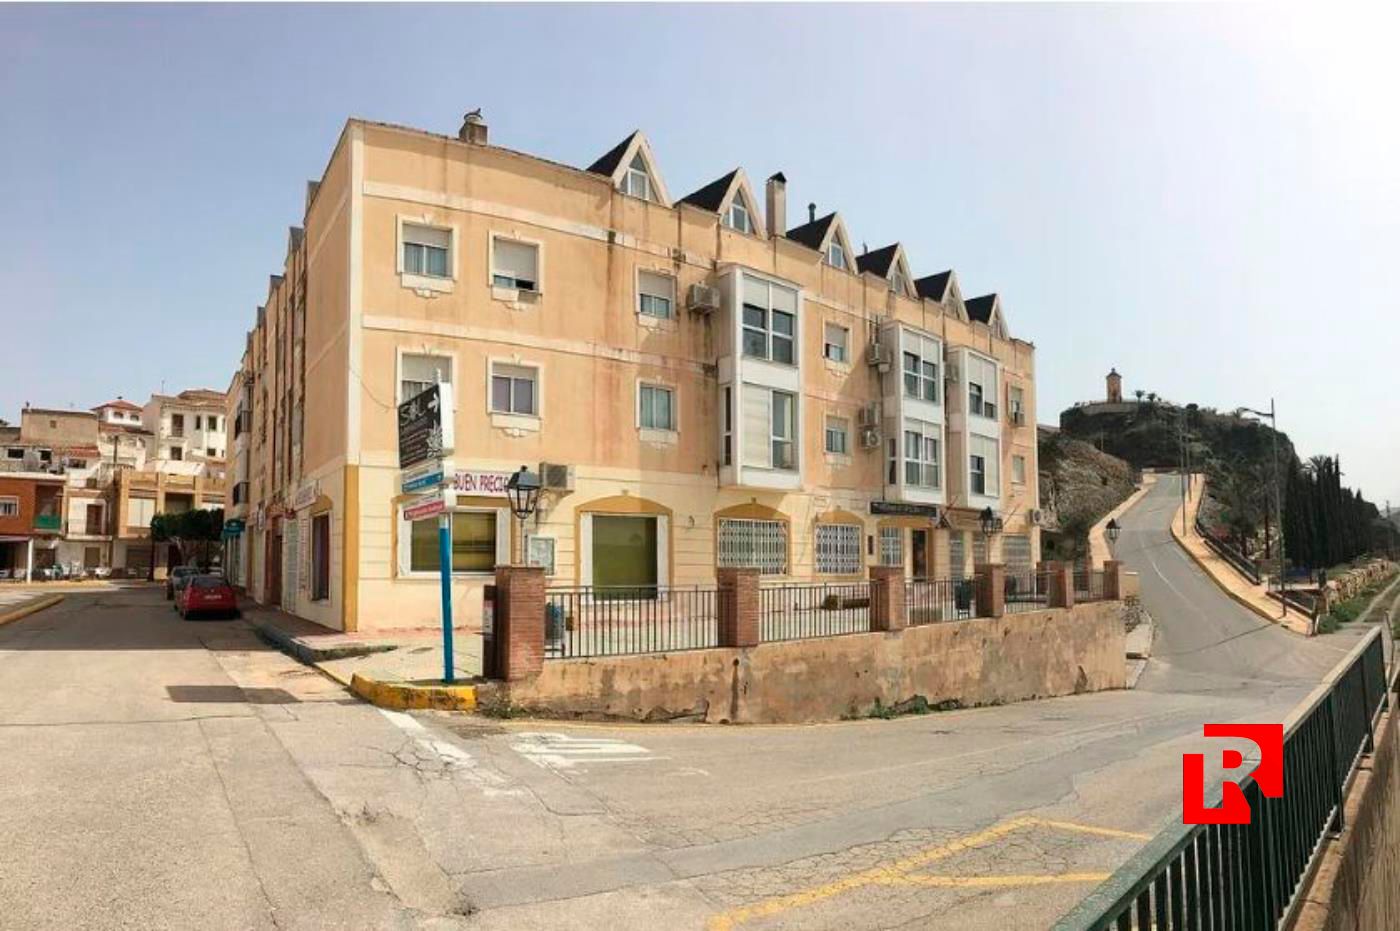 Apartment for sale in Arboleas ALMERIA